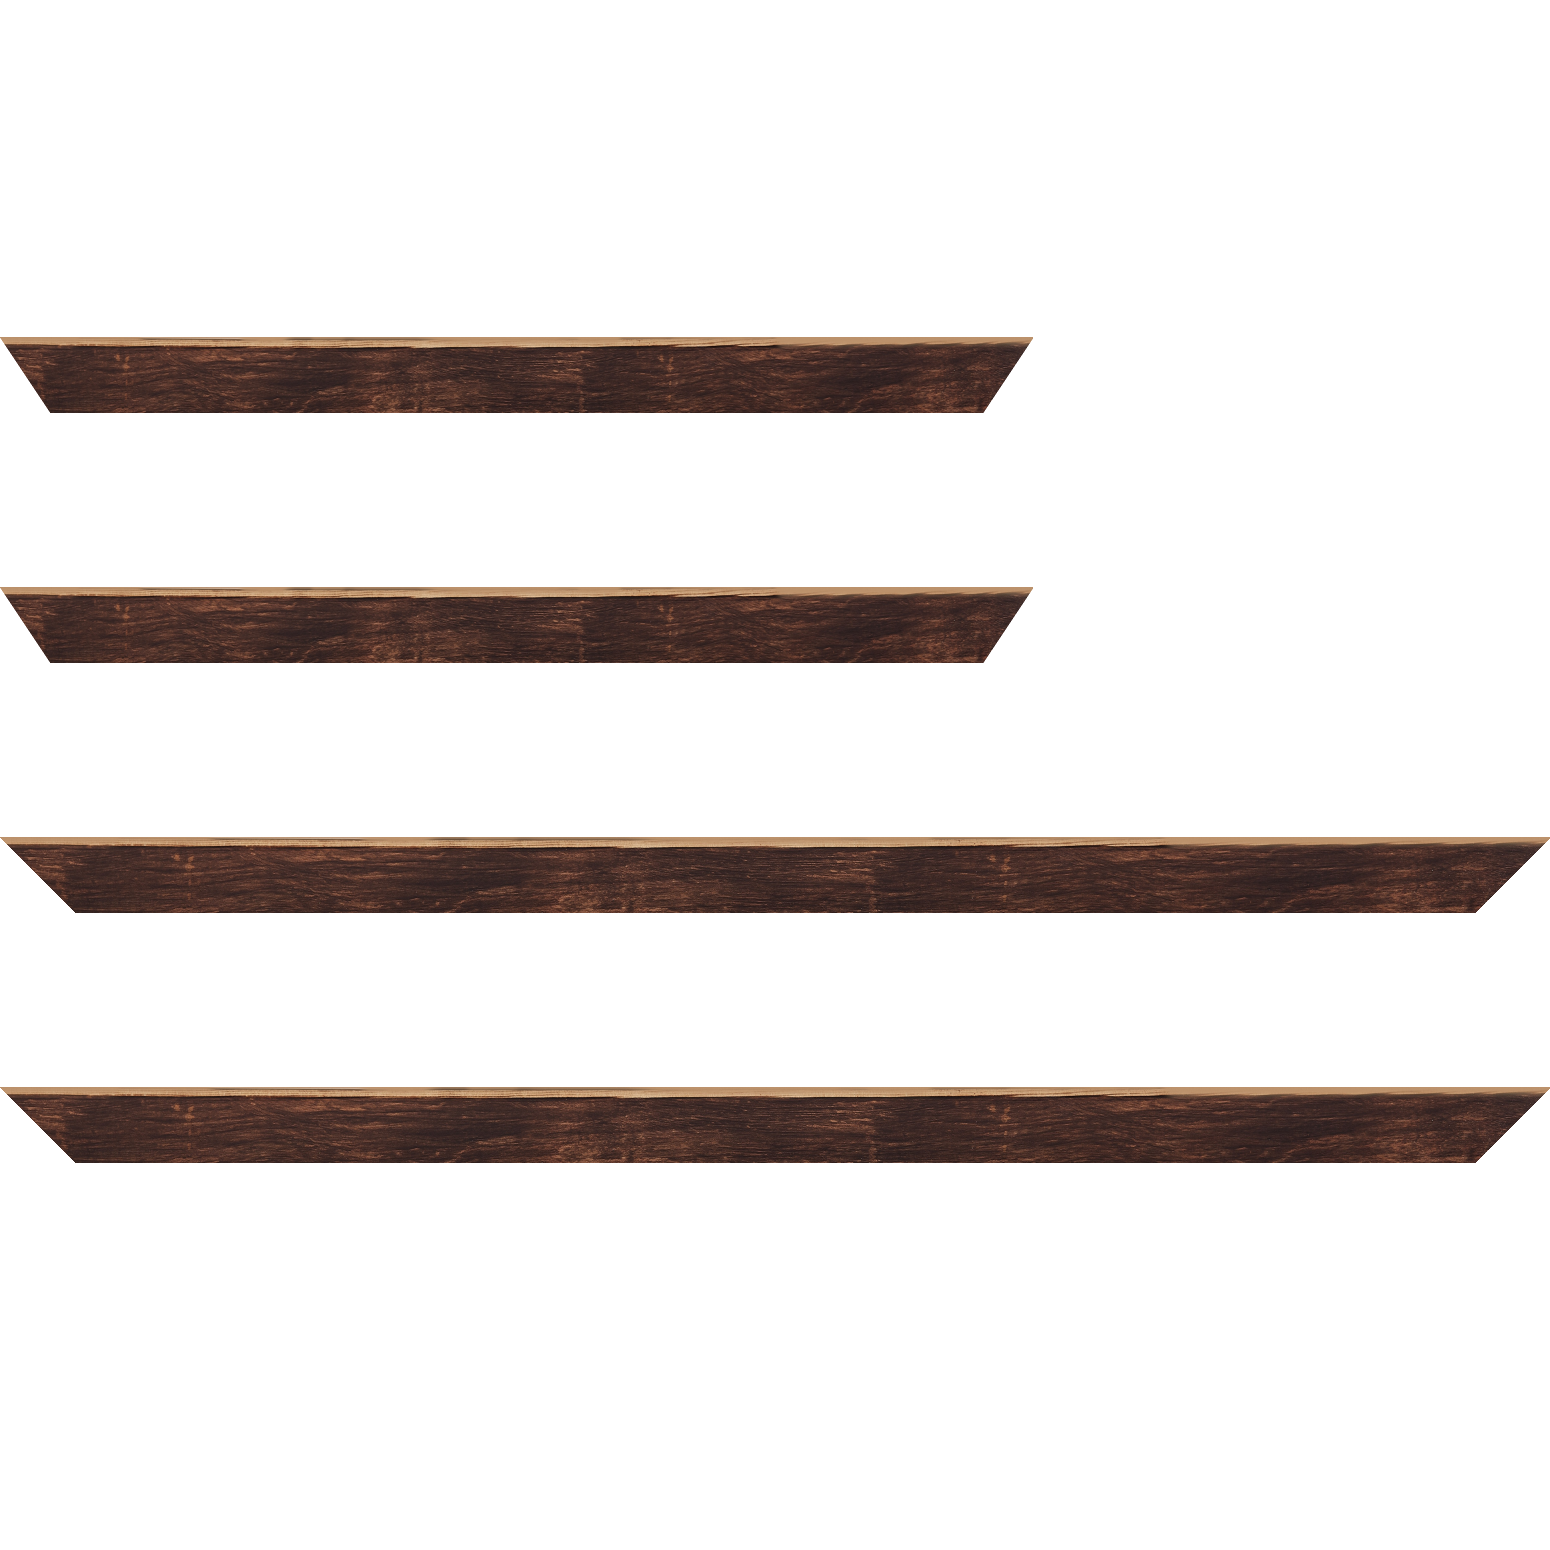 Baguette bois profil arrondi en pente plongeant largeur 2.4cm couleur marron effet ressuyé, angle du cadre extérieur filet naturel - 59.4x84.1